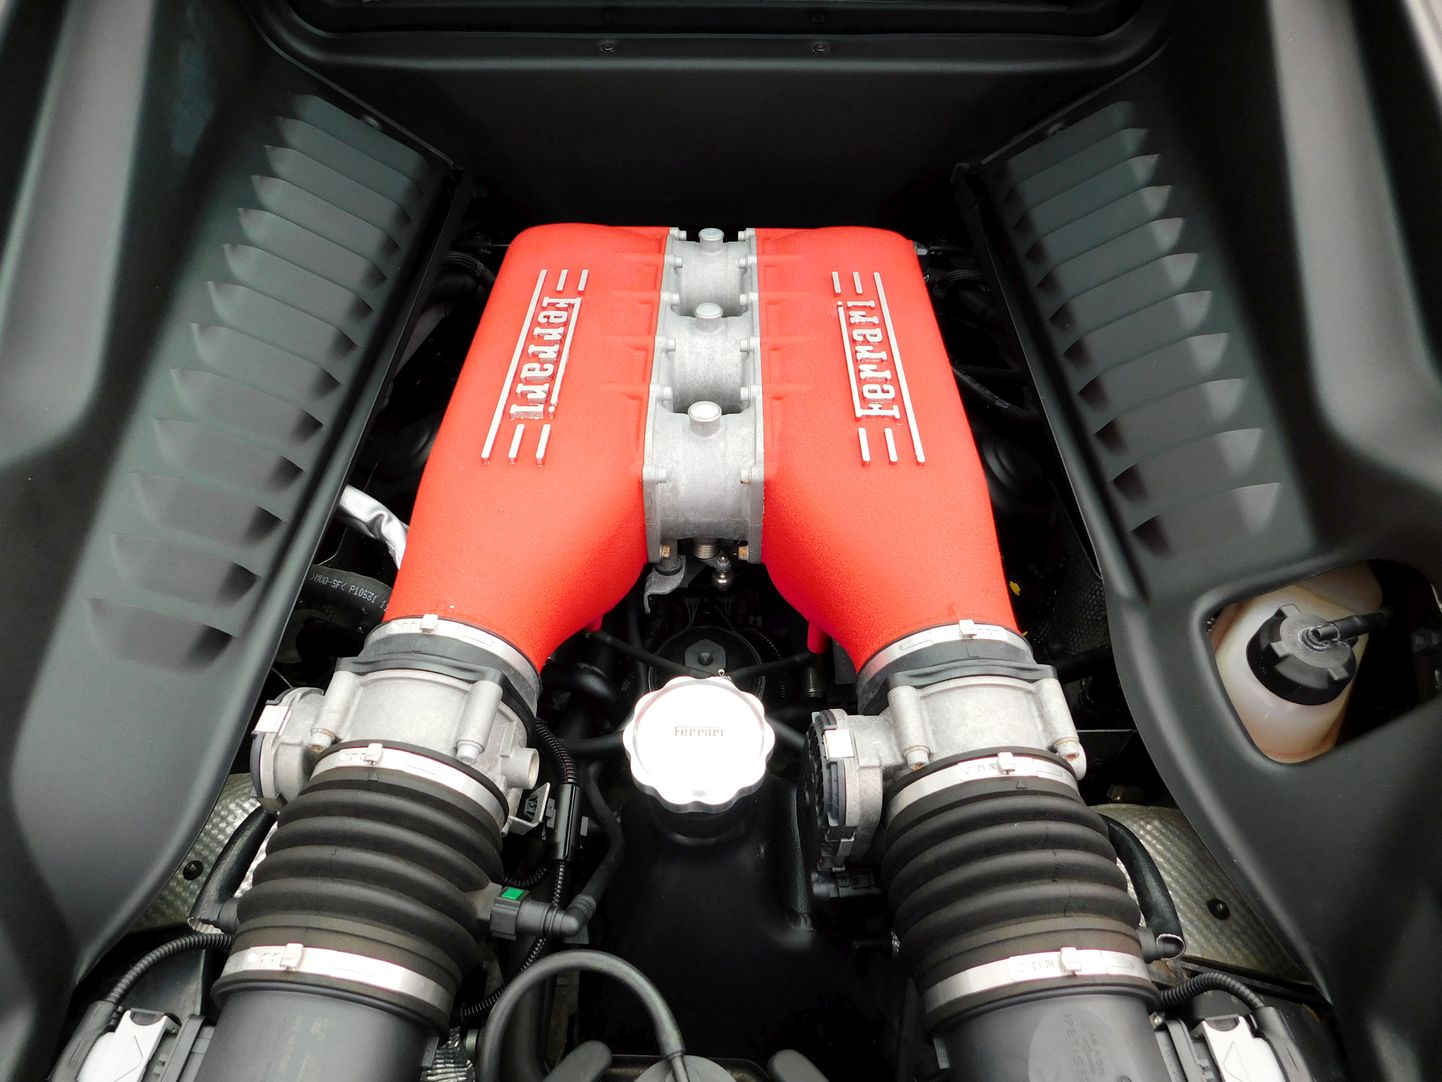 Двигатель автомобиля Ferrari. Иллюстративное фото.